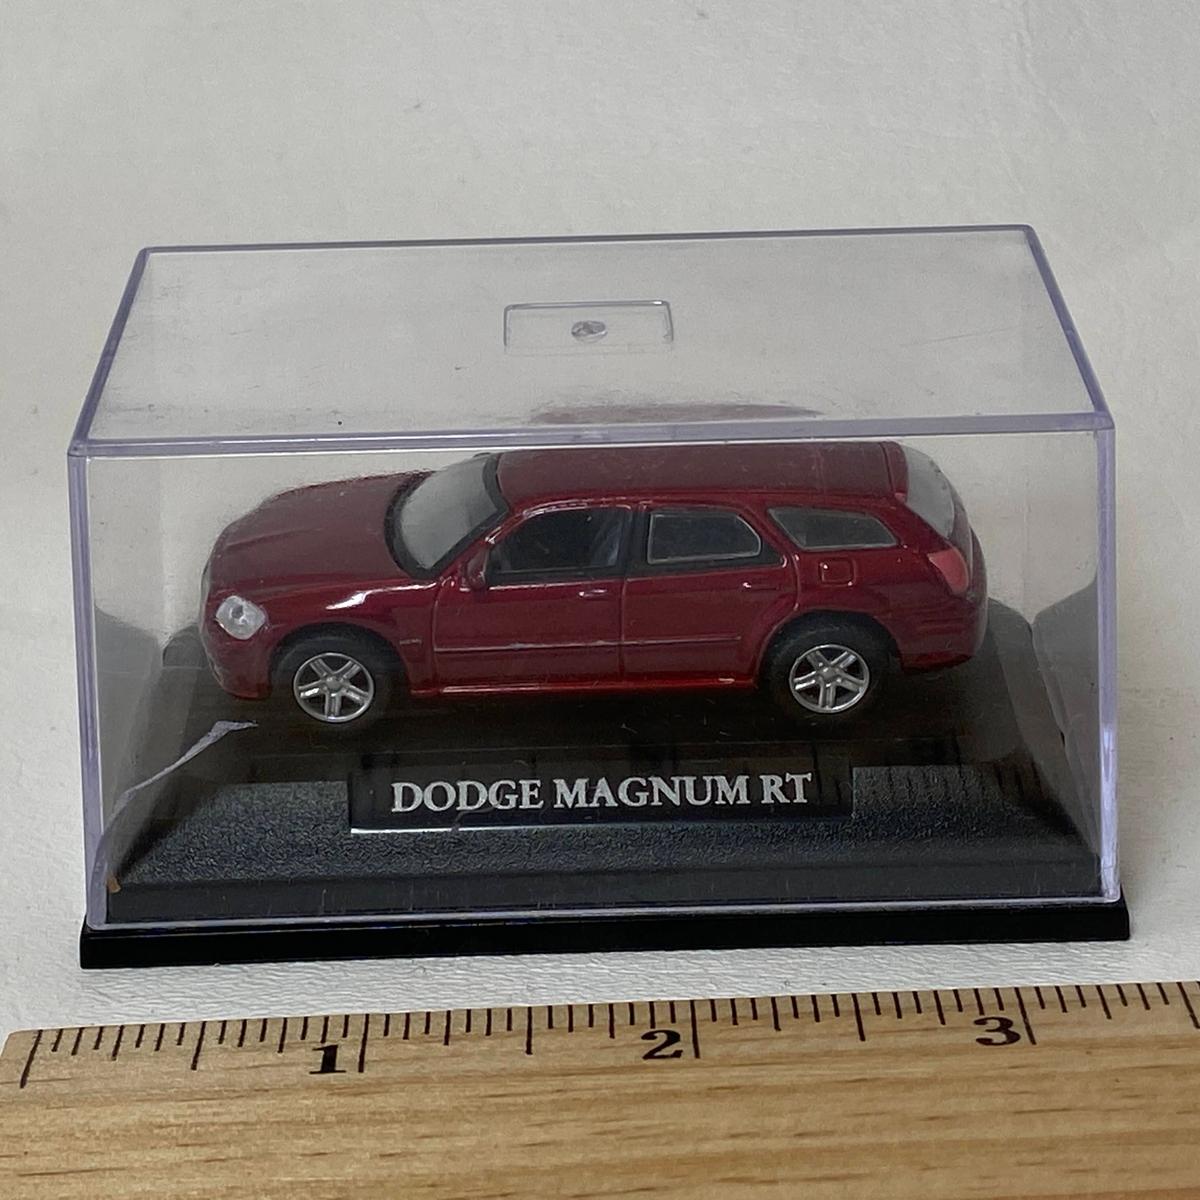 Dodge Magnum RT Die-Cast Replica Car in Plastic Case